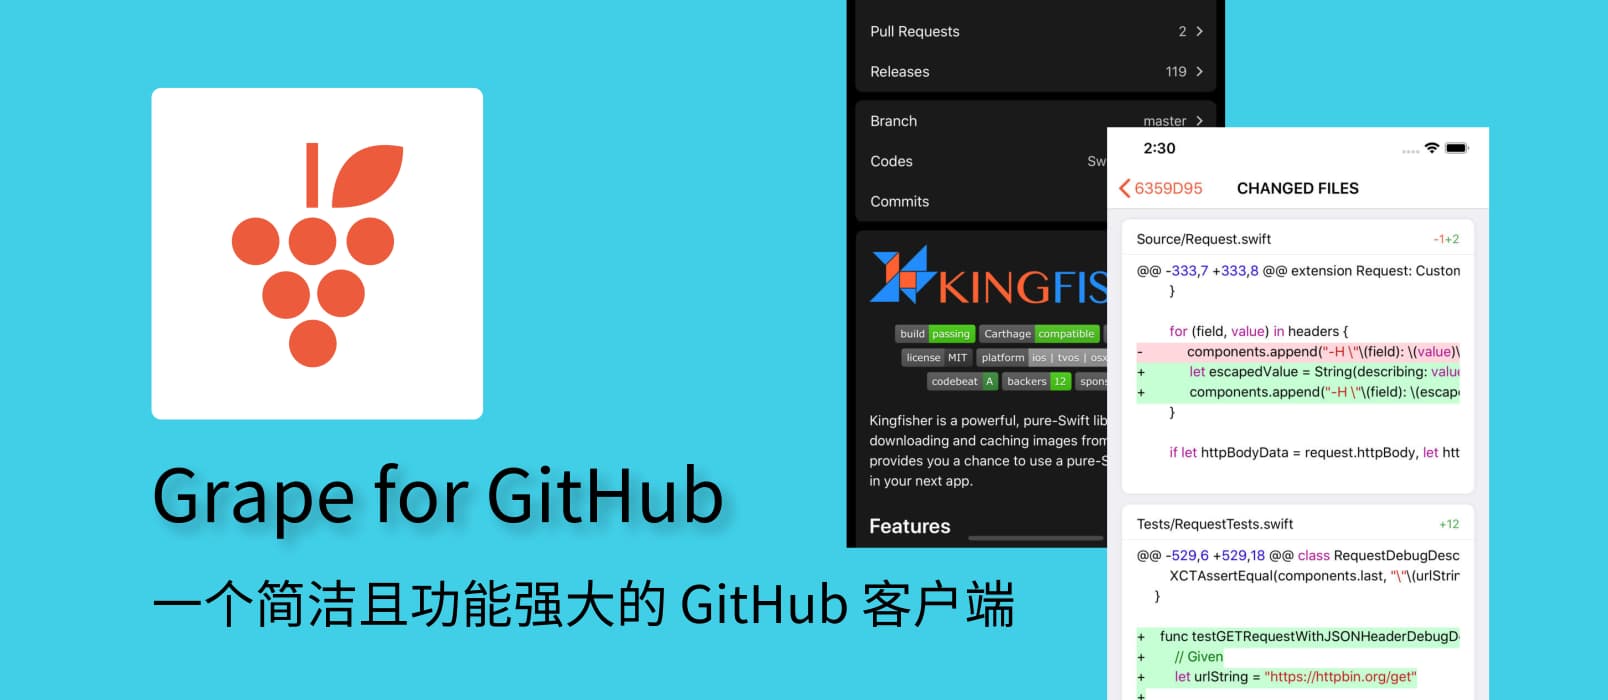 Grape for GitHub - 致力于打造简洁且功能强大的 GitHub 客户端 1